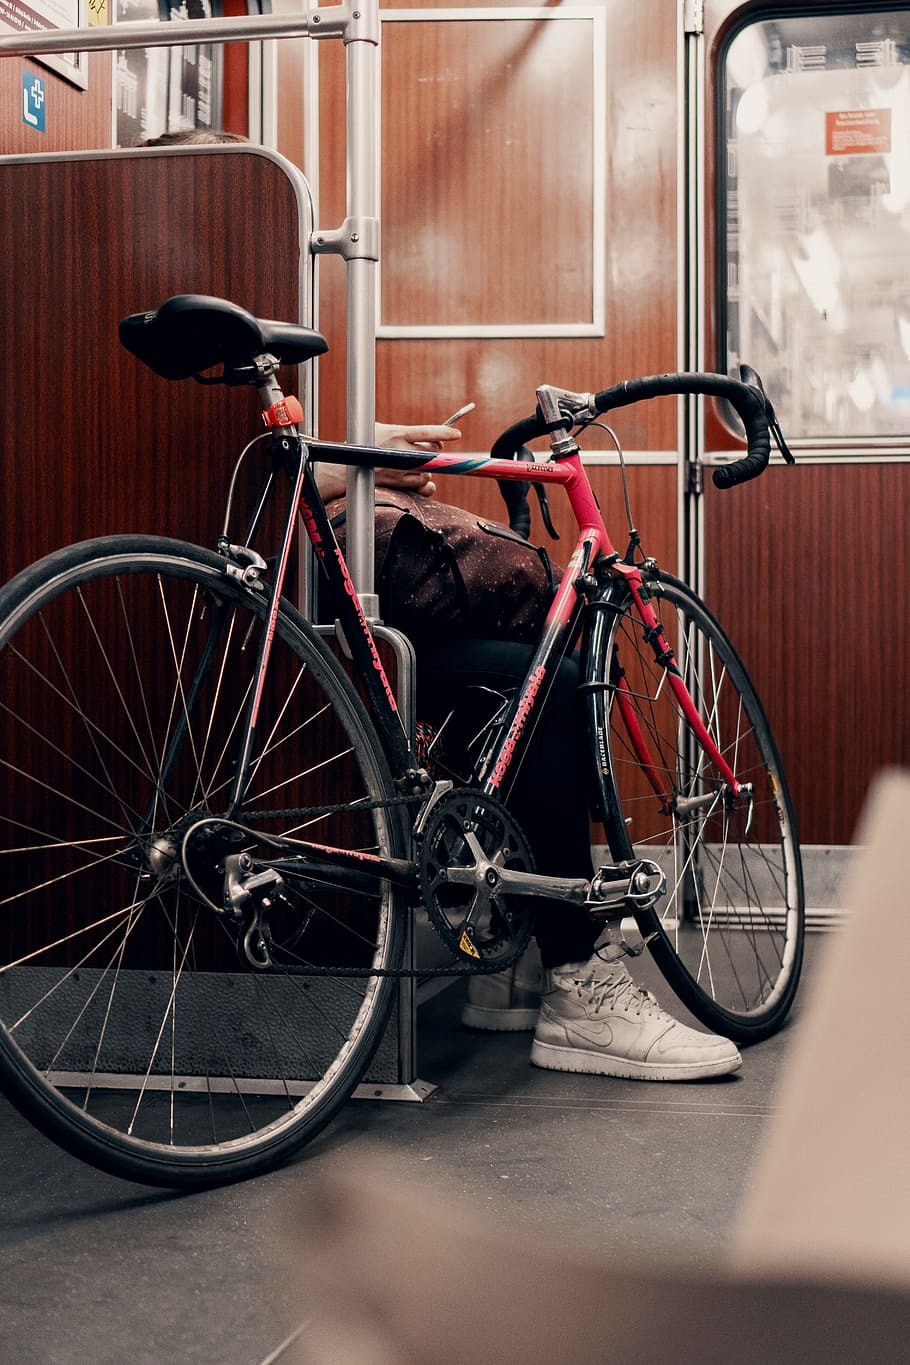 910x1365 HD обои: черно-красный шоссейный велосипед в поезде, обувь, телефон, коммутируют | Wallpaper Flare